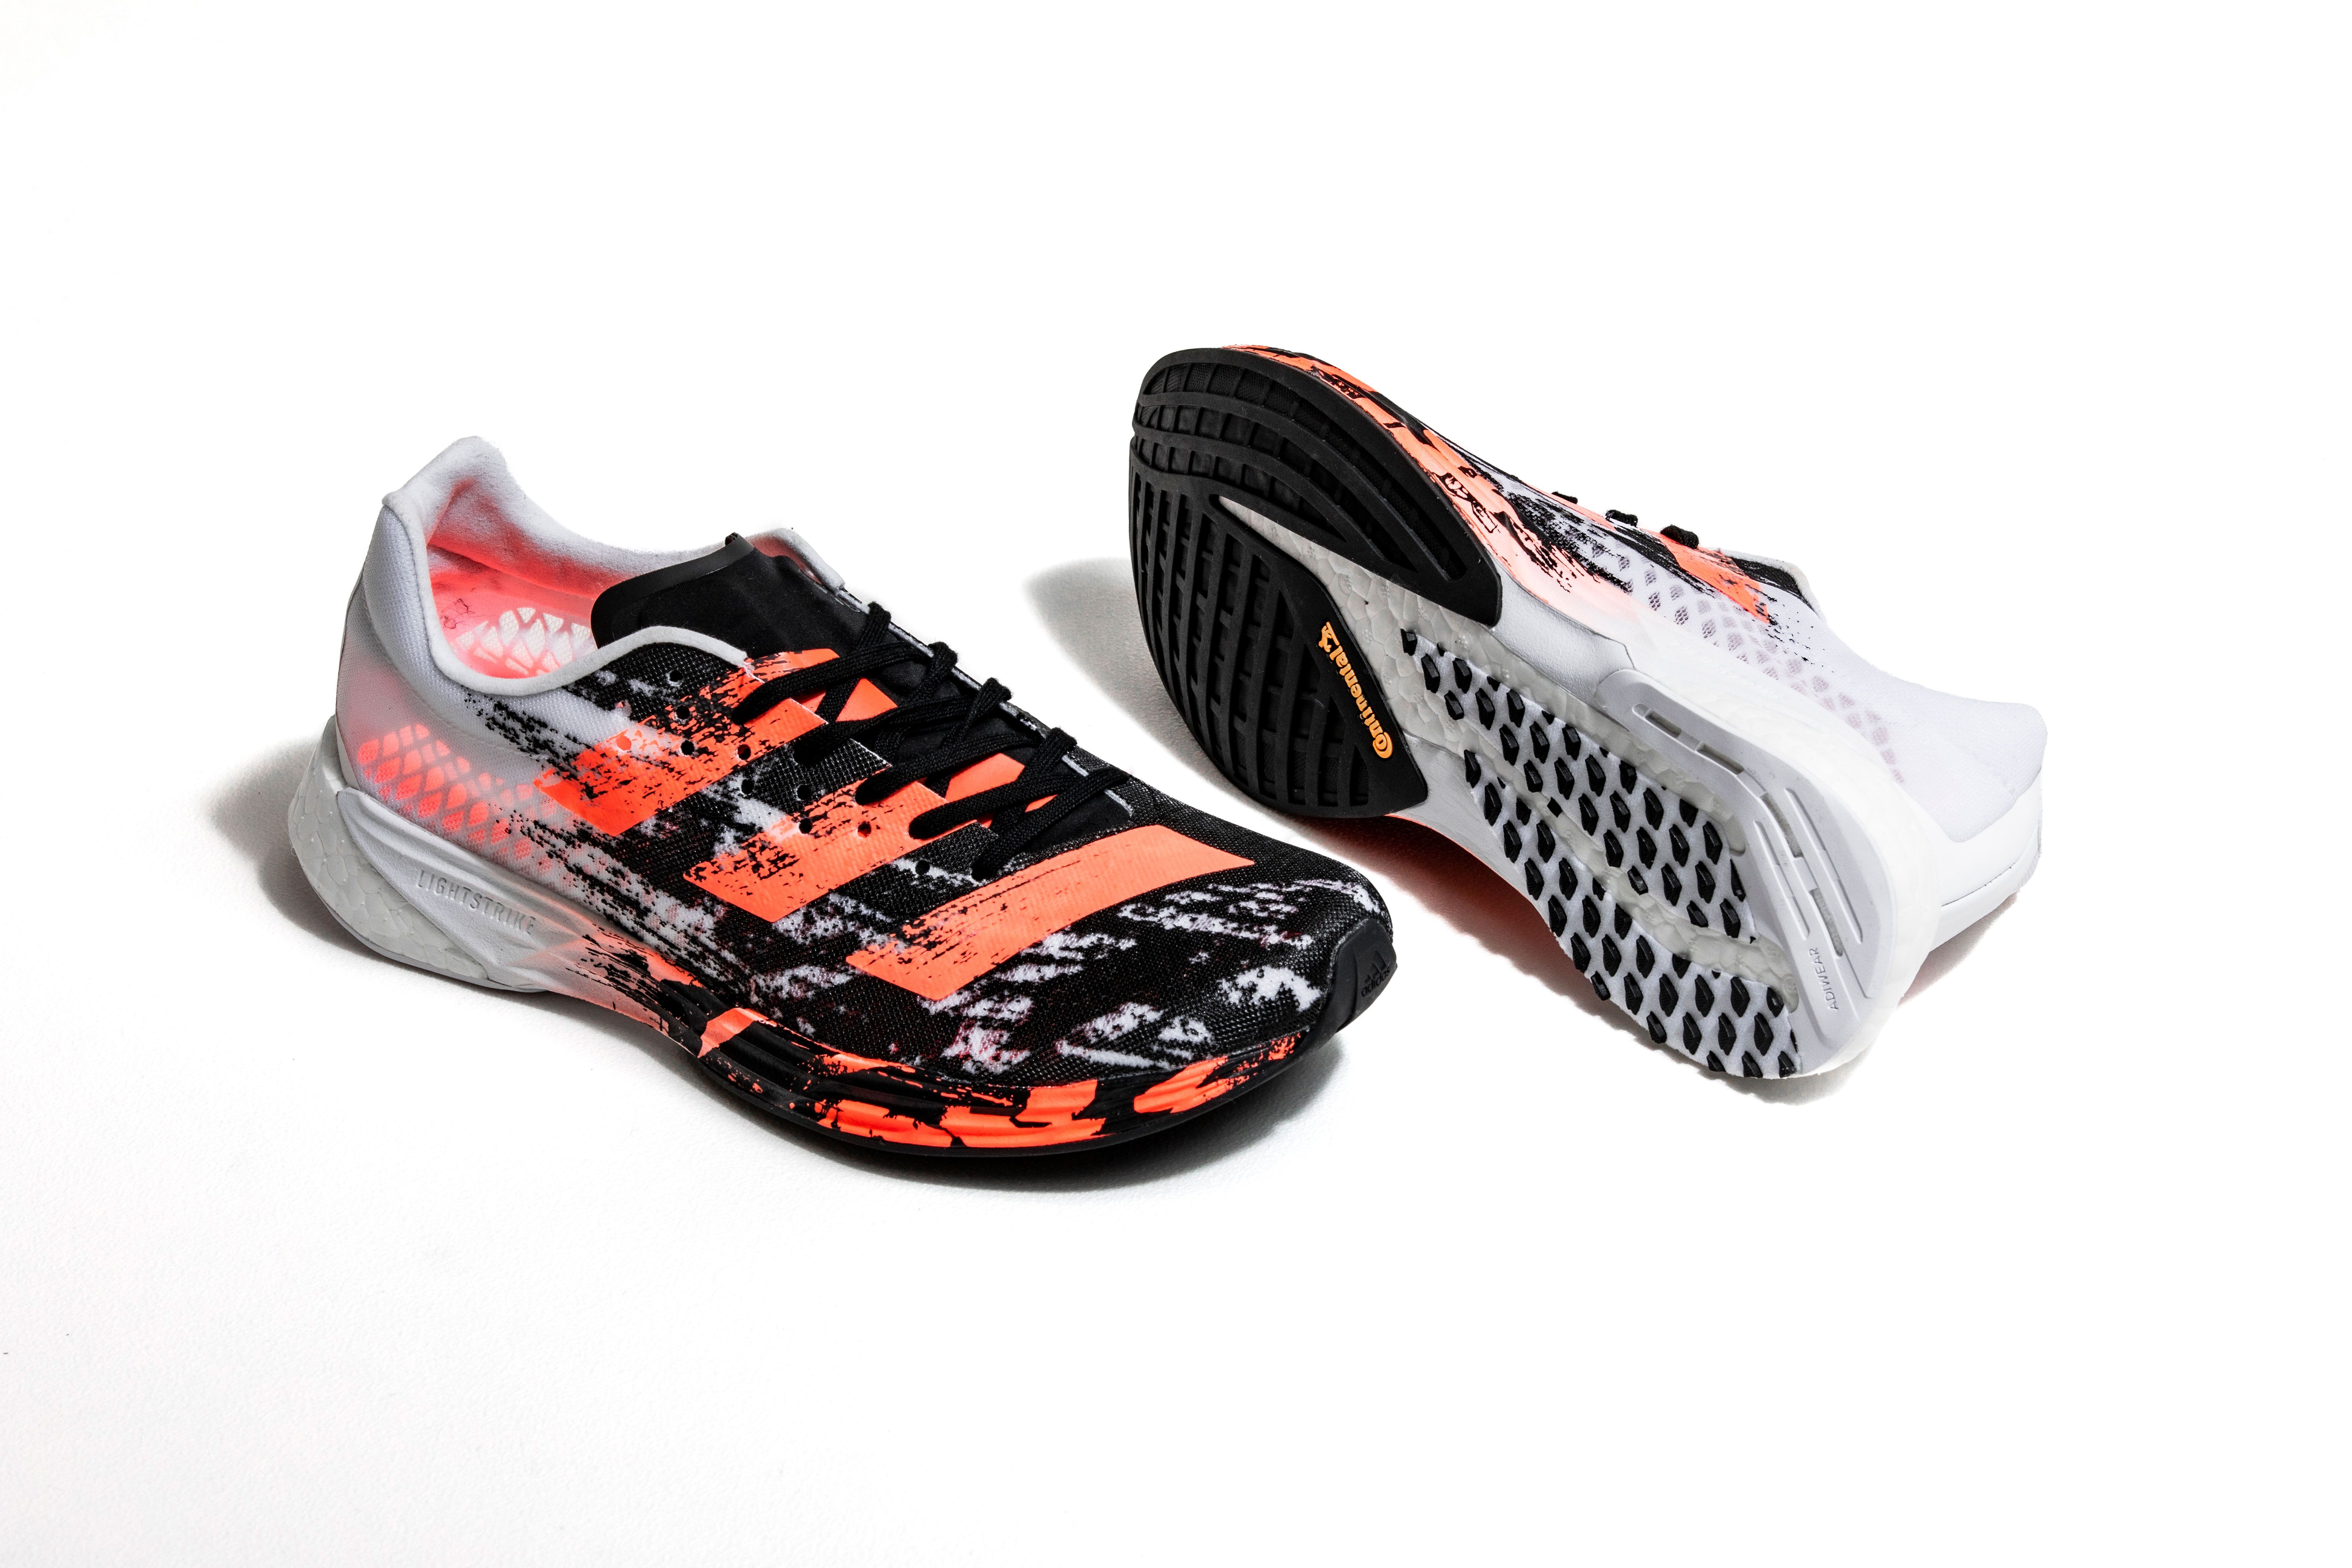 actualizar Dentro calina Adizero Pro - Probamos zapatillas running más rápidas de Adidas